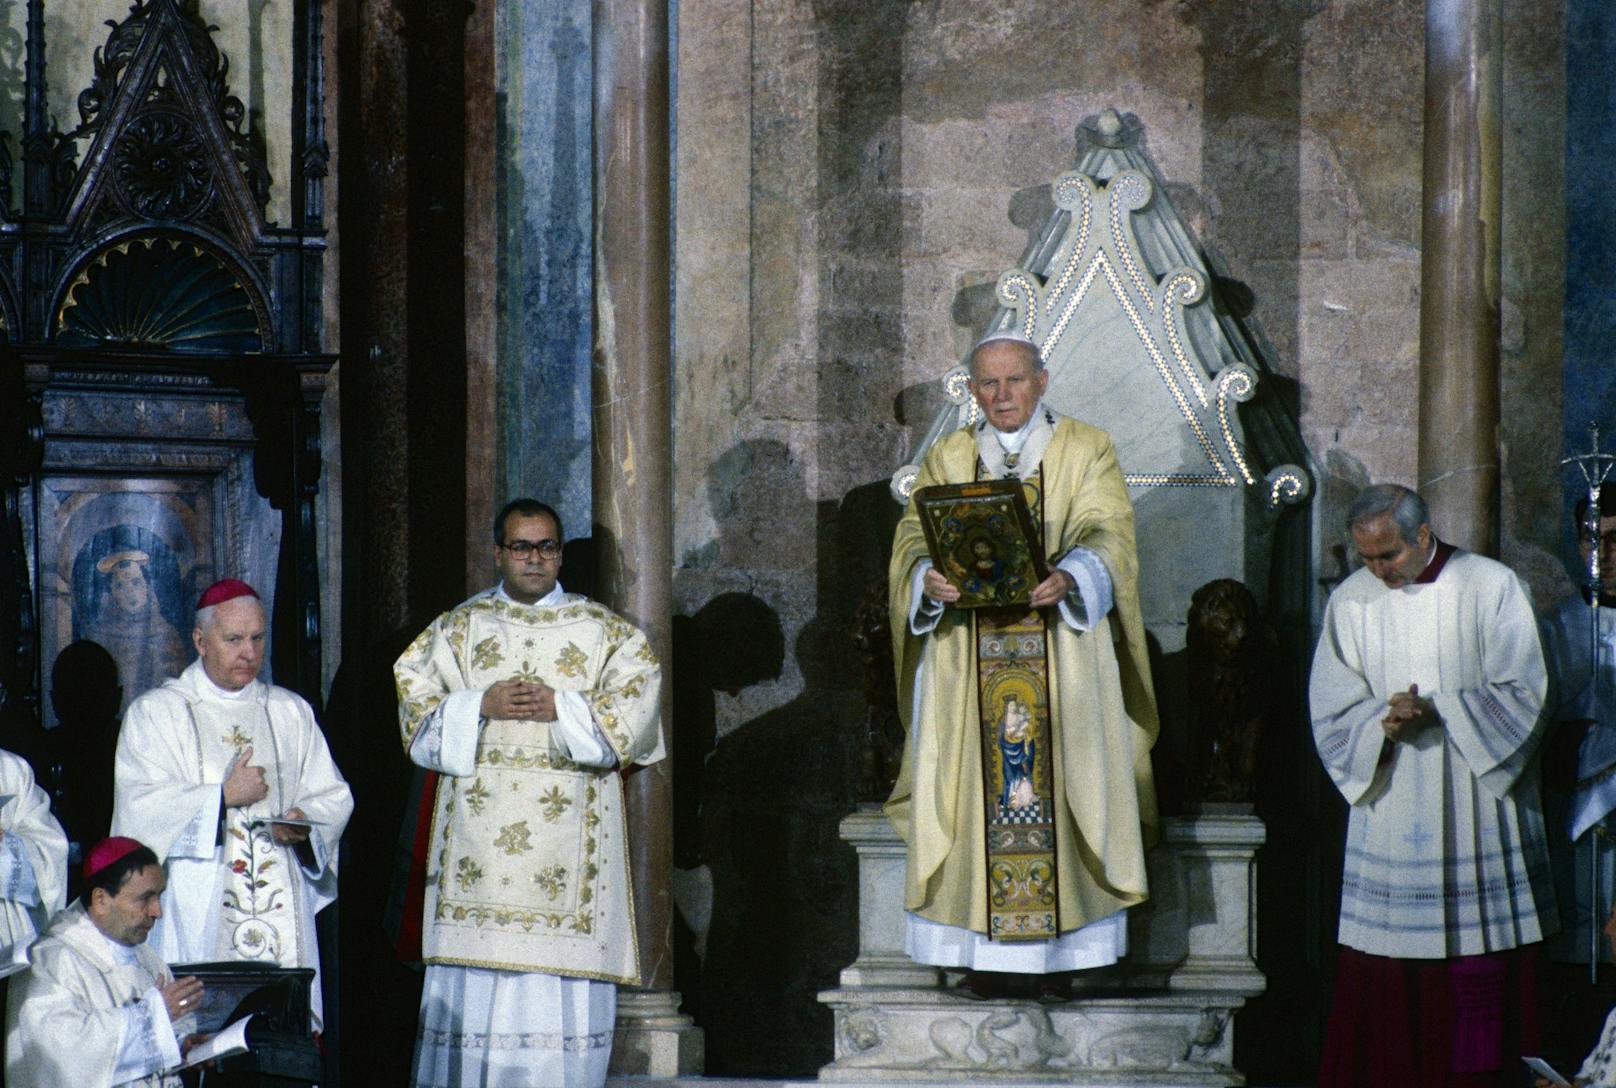 Papst Johannes Paul II. soll Missbrauch vertuscht haben